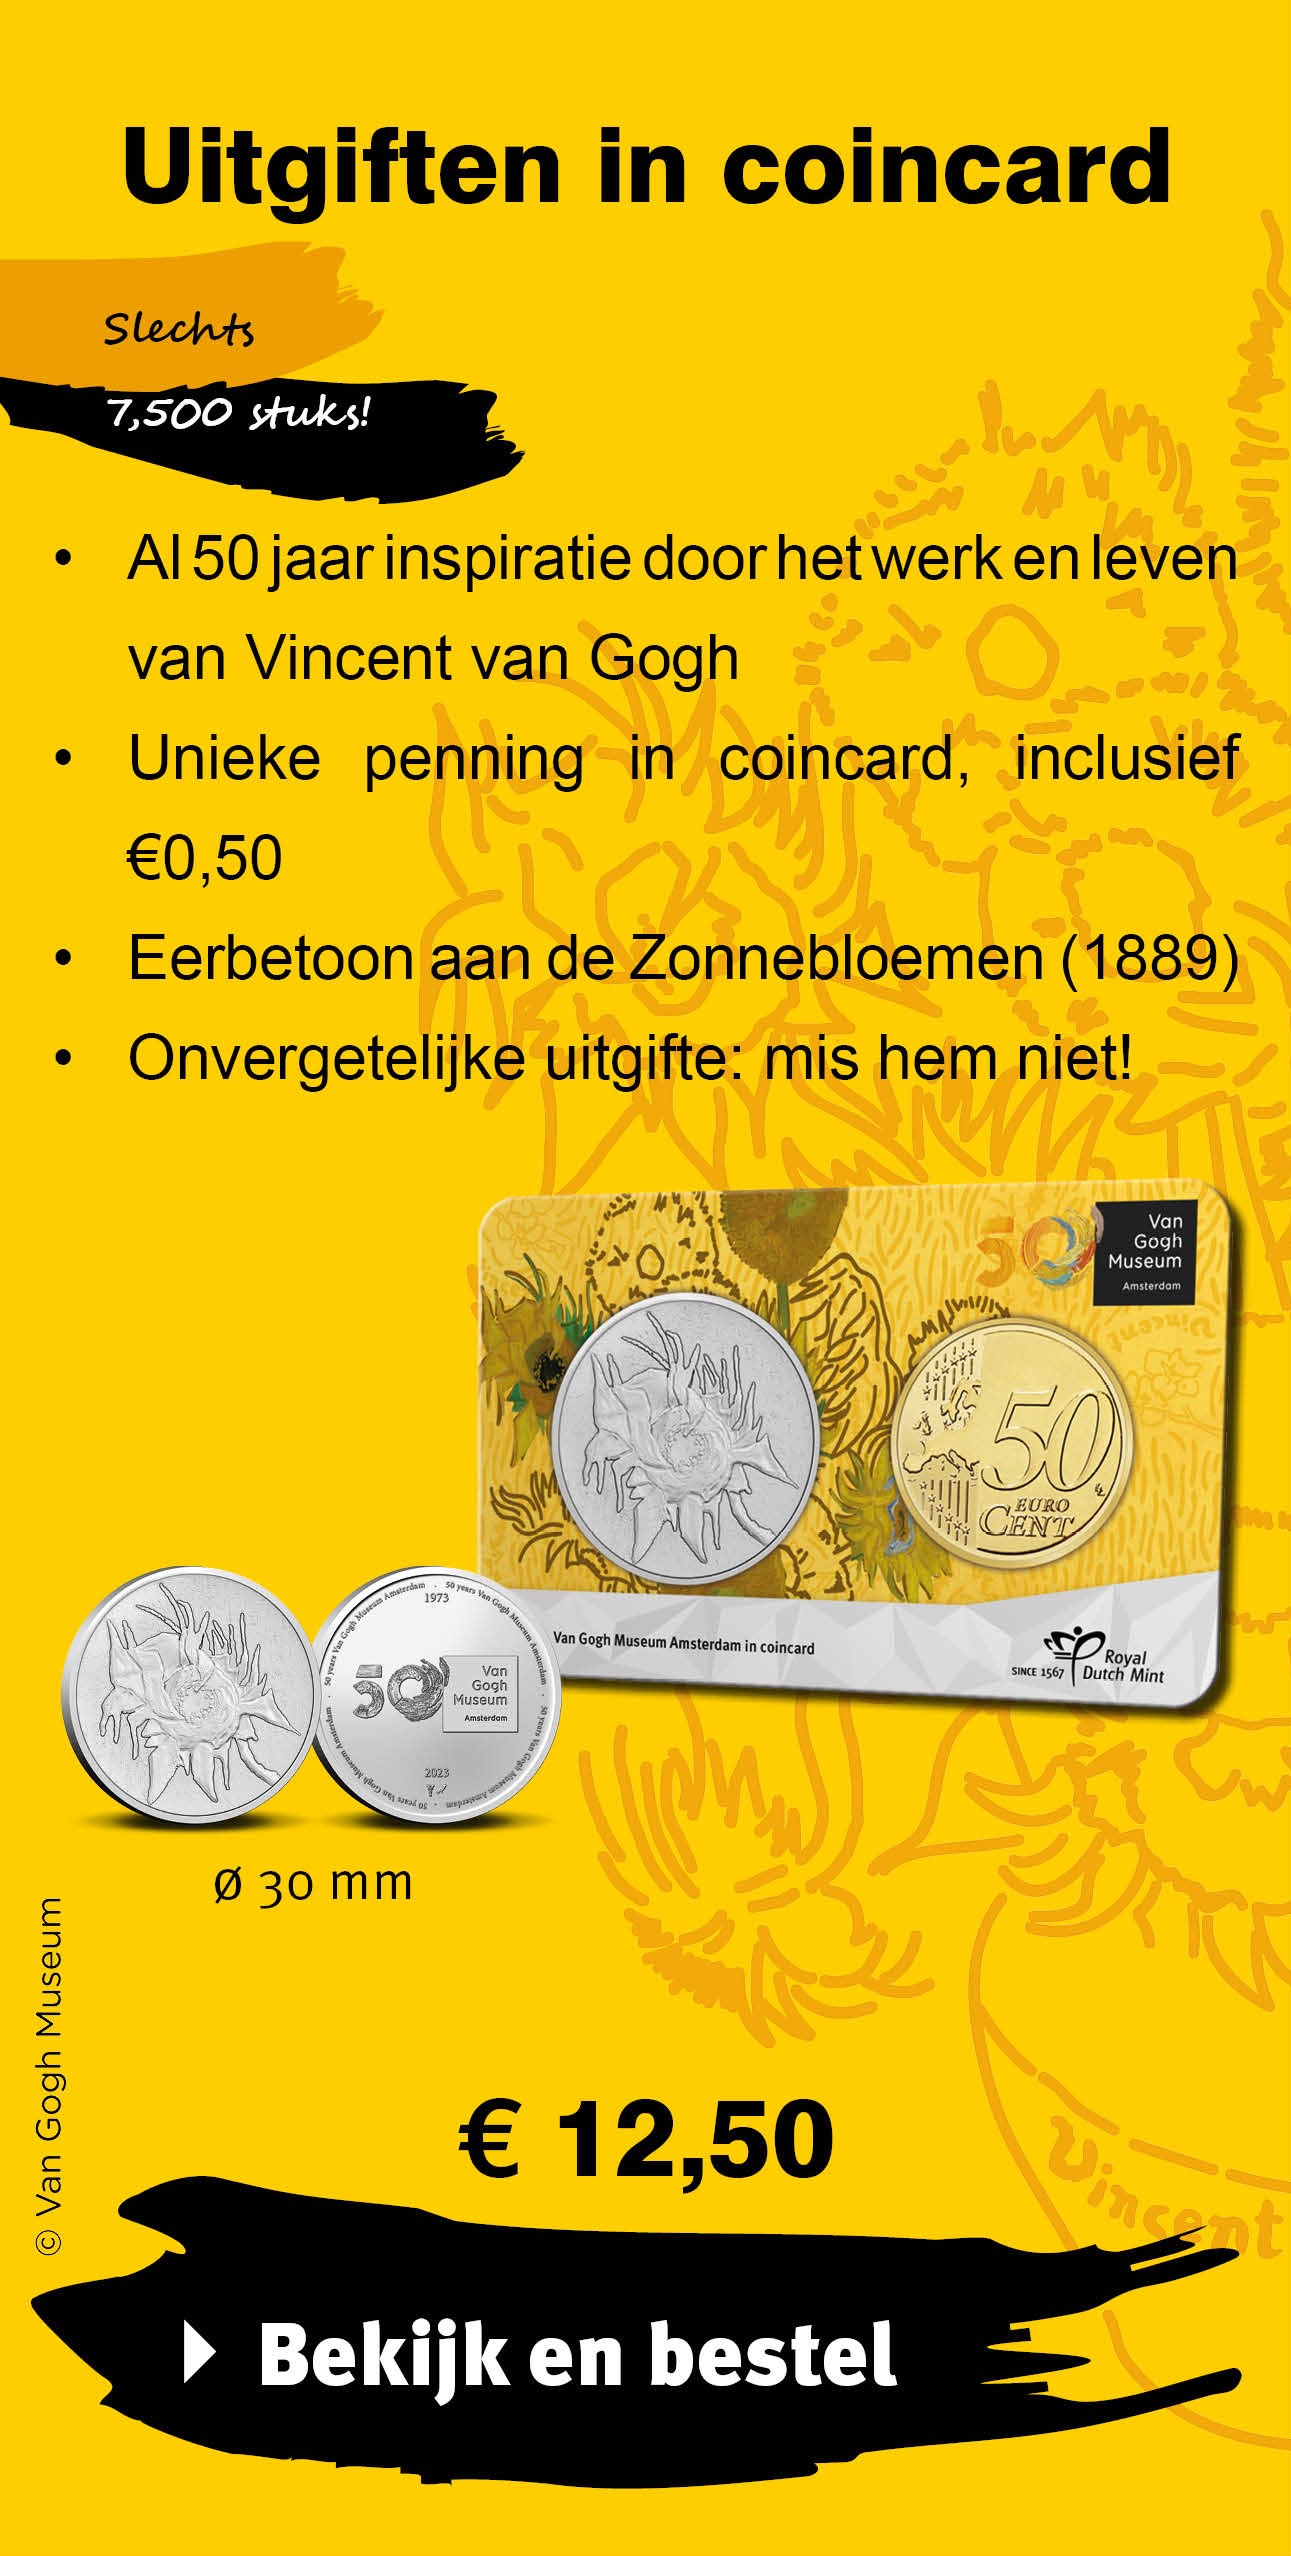 Bekijk en bestel: 50 jaar Van Gogh Museum penning in coincard